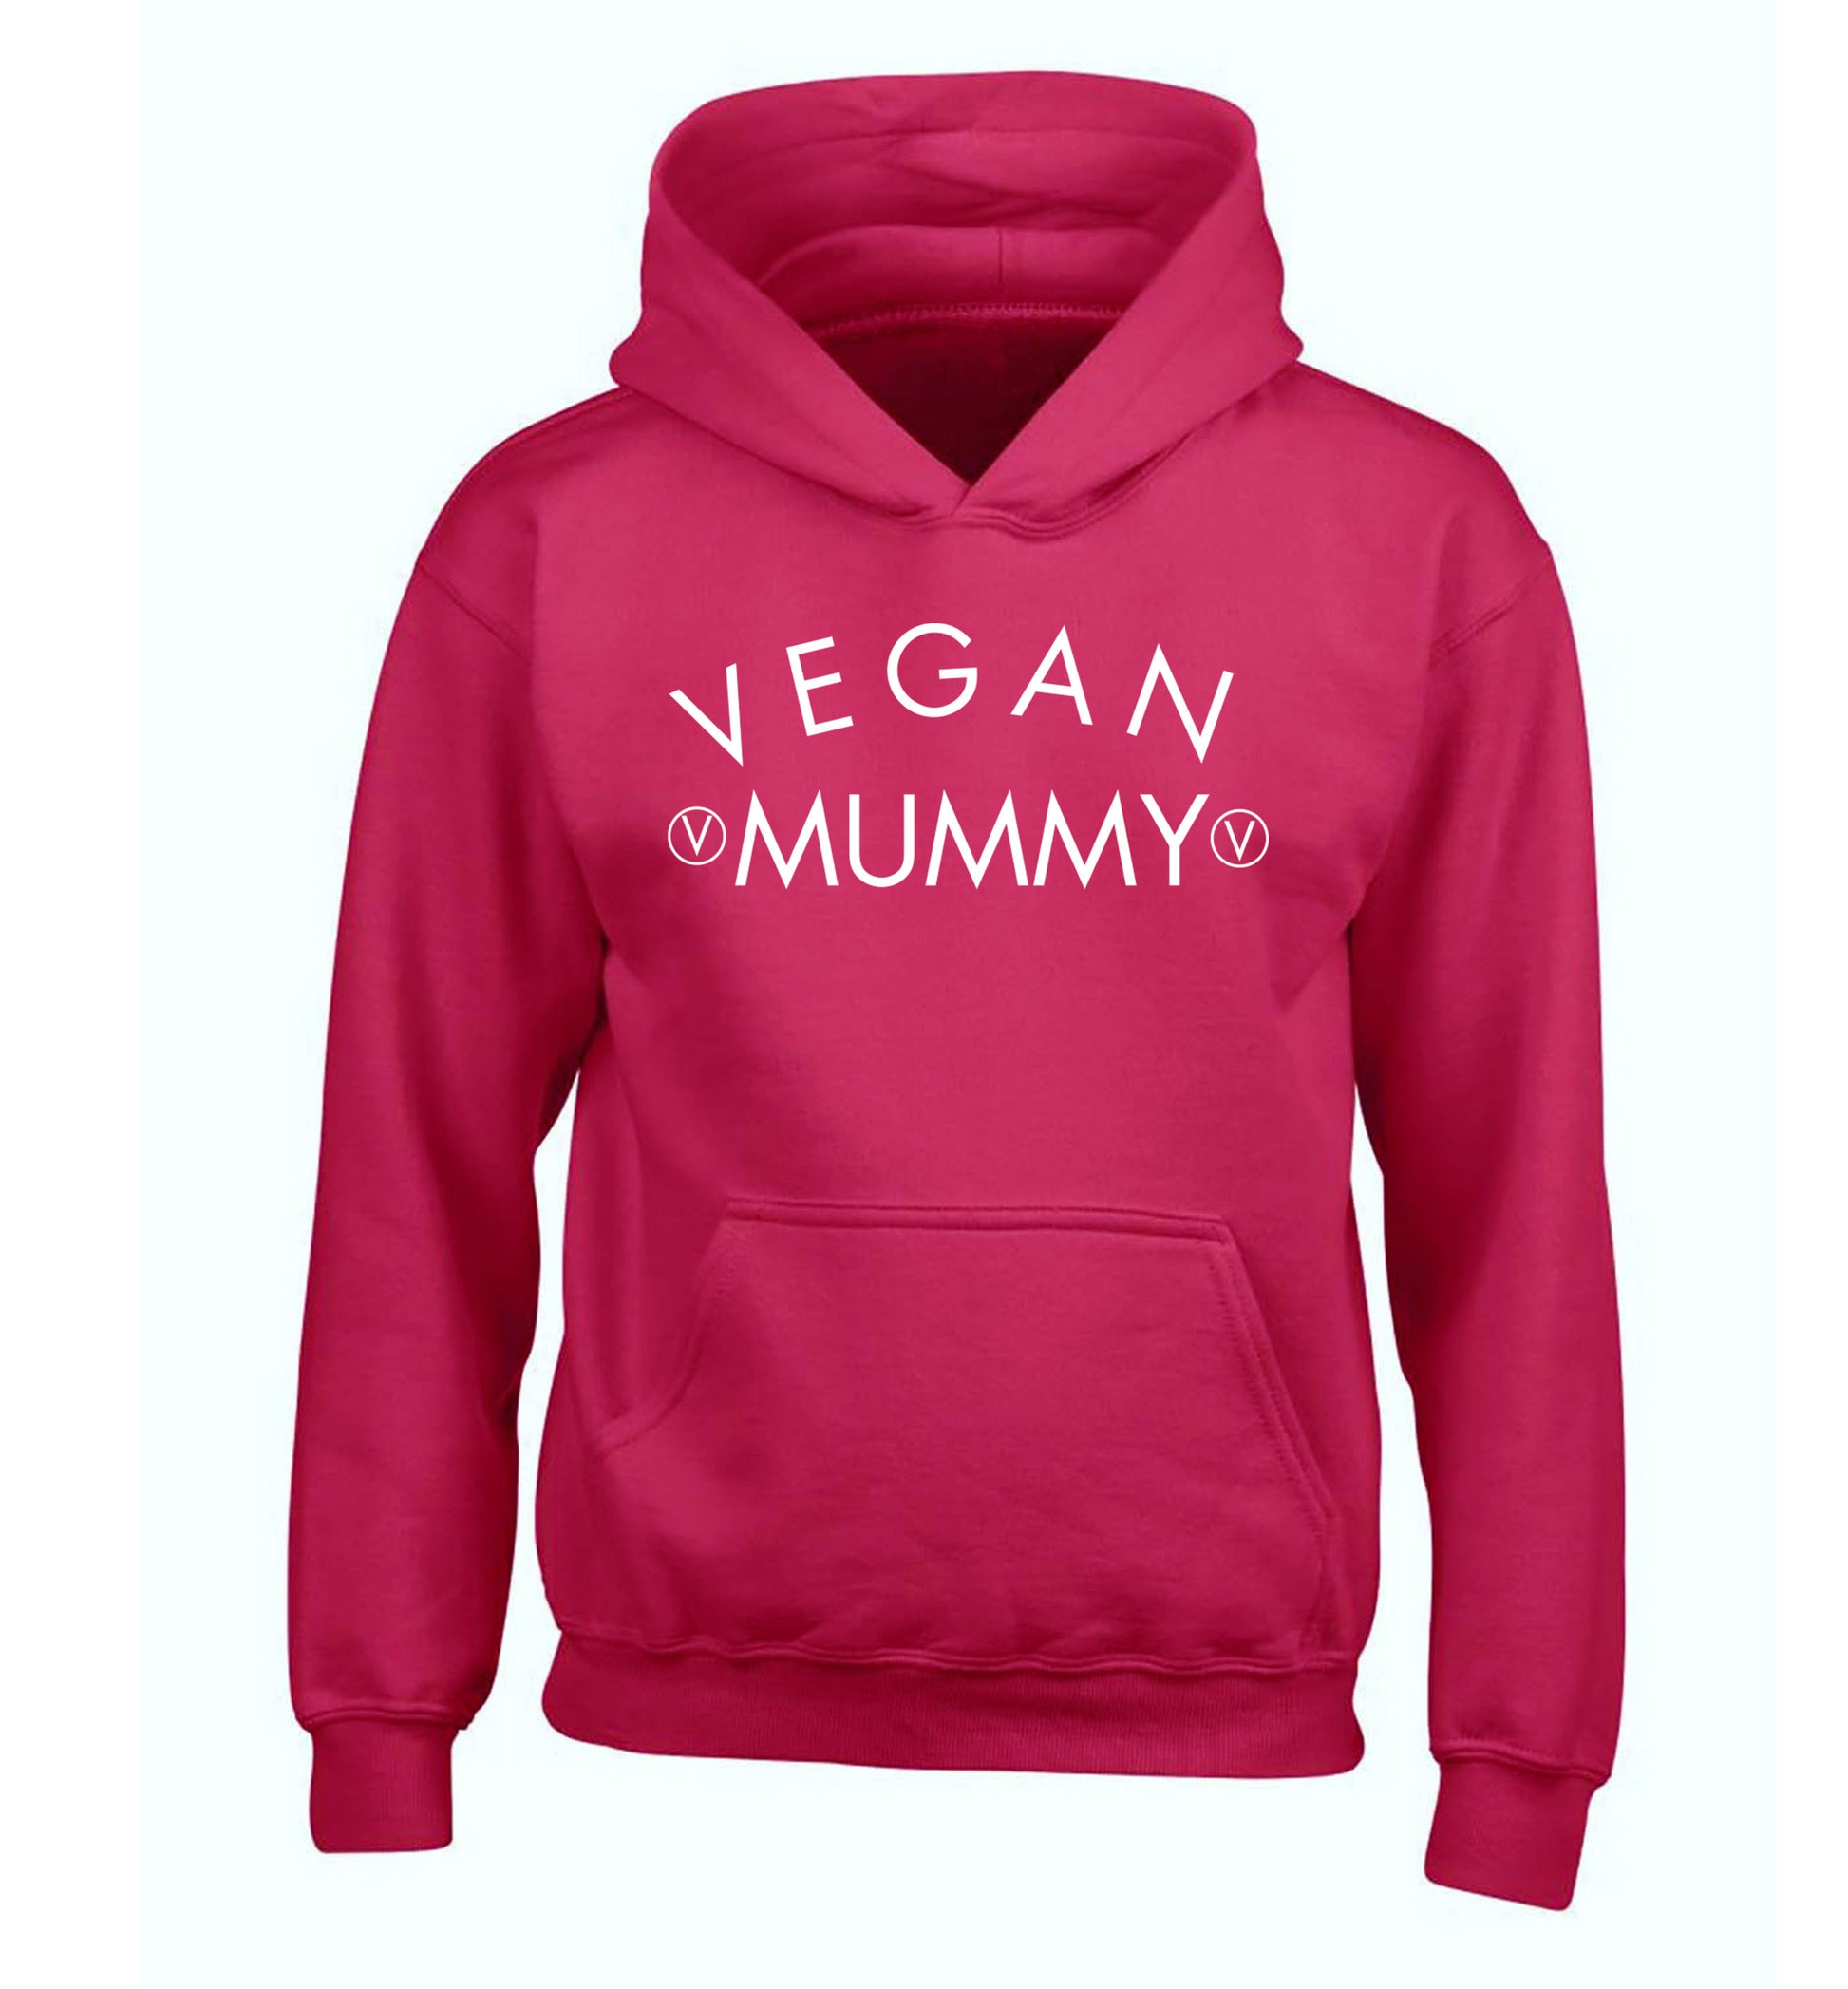 Vegan mummy children's pink hoodie 12-14 Years